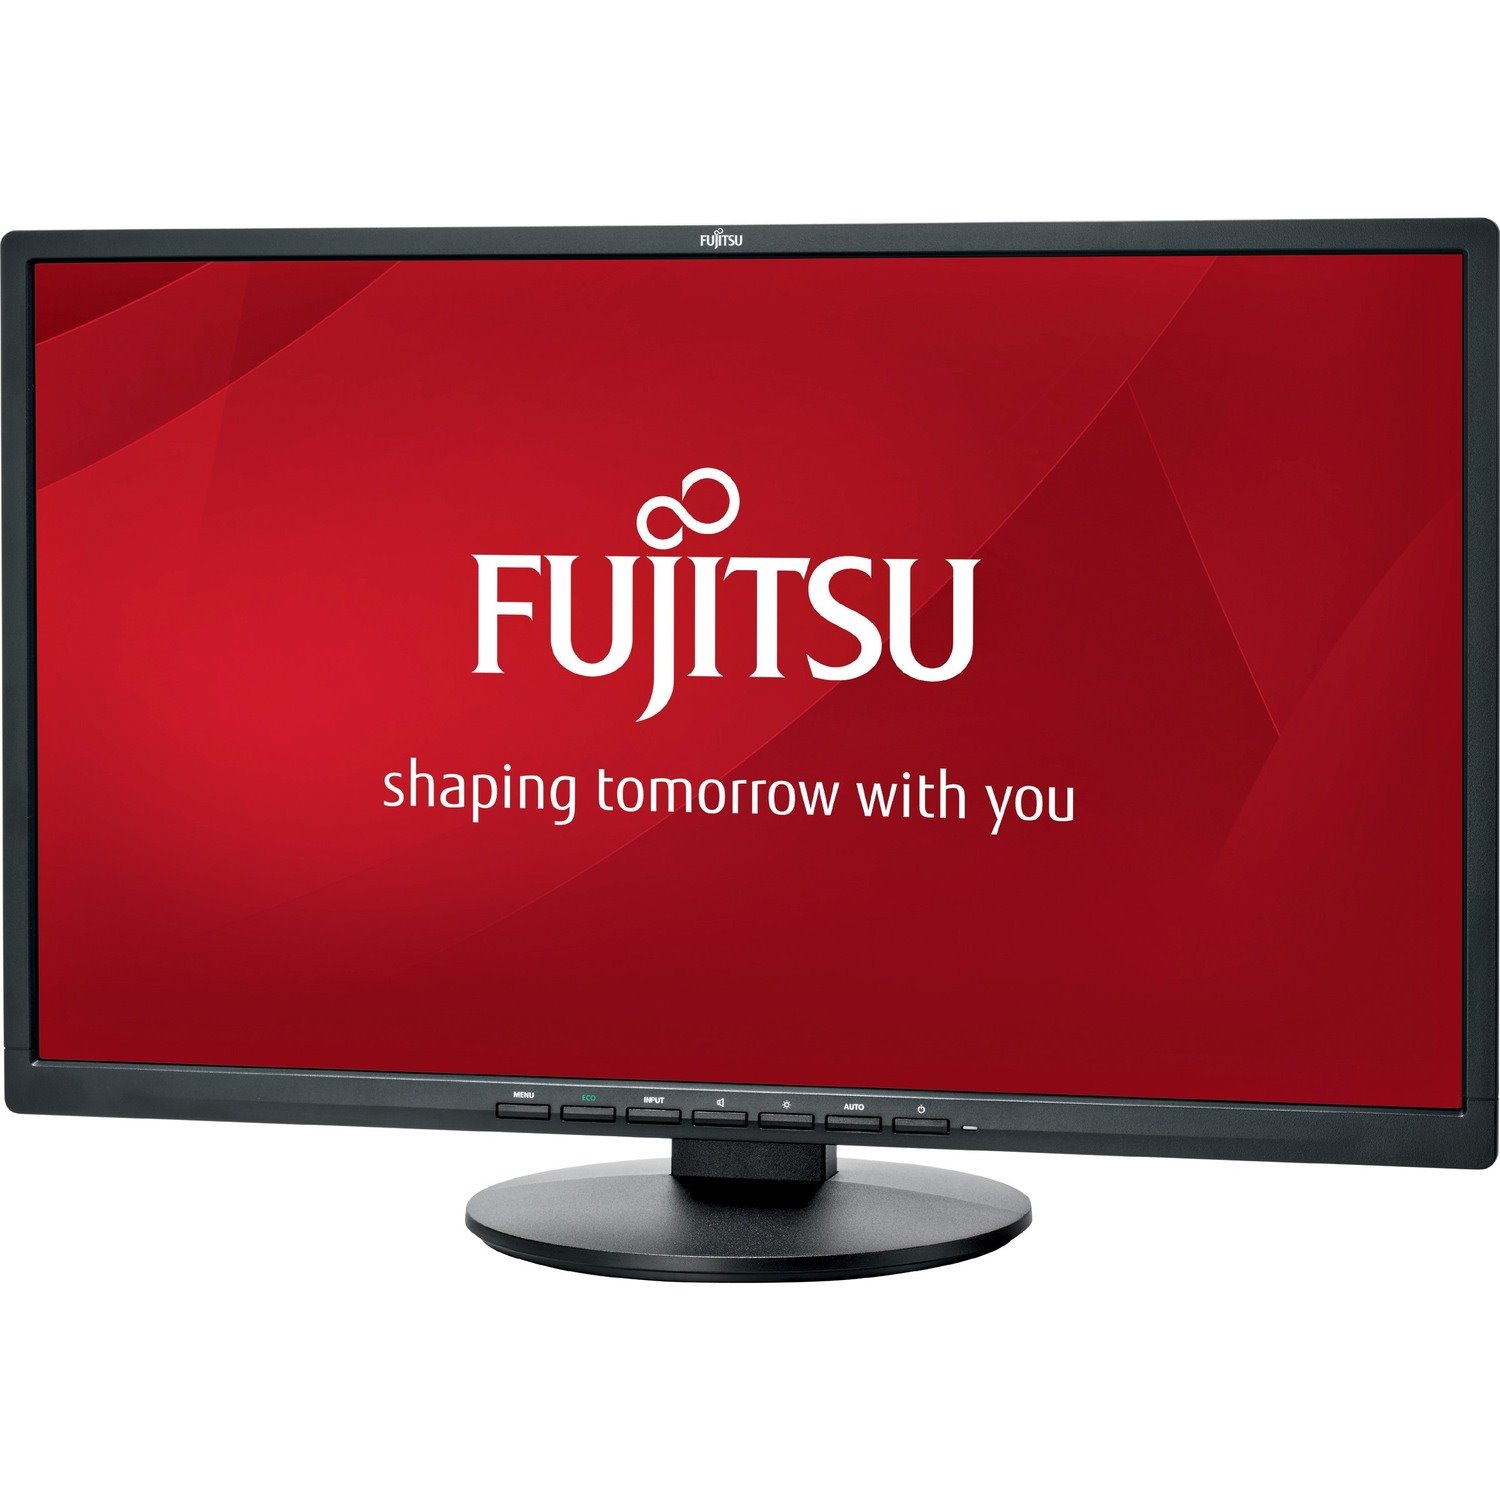 Fujitsu E24-8 TS Pro 60.5 cm (23.8") Full HD LED LCD Monitor - 16:9 - Matte Black